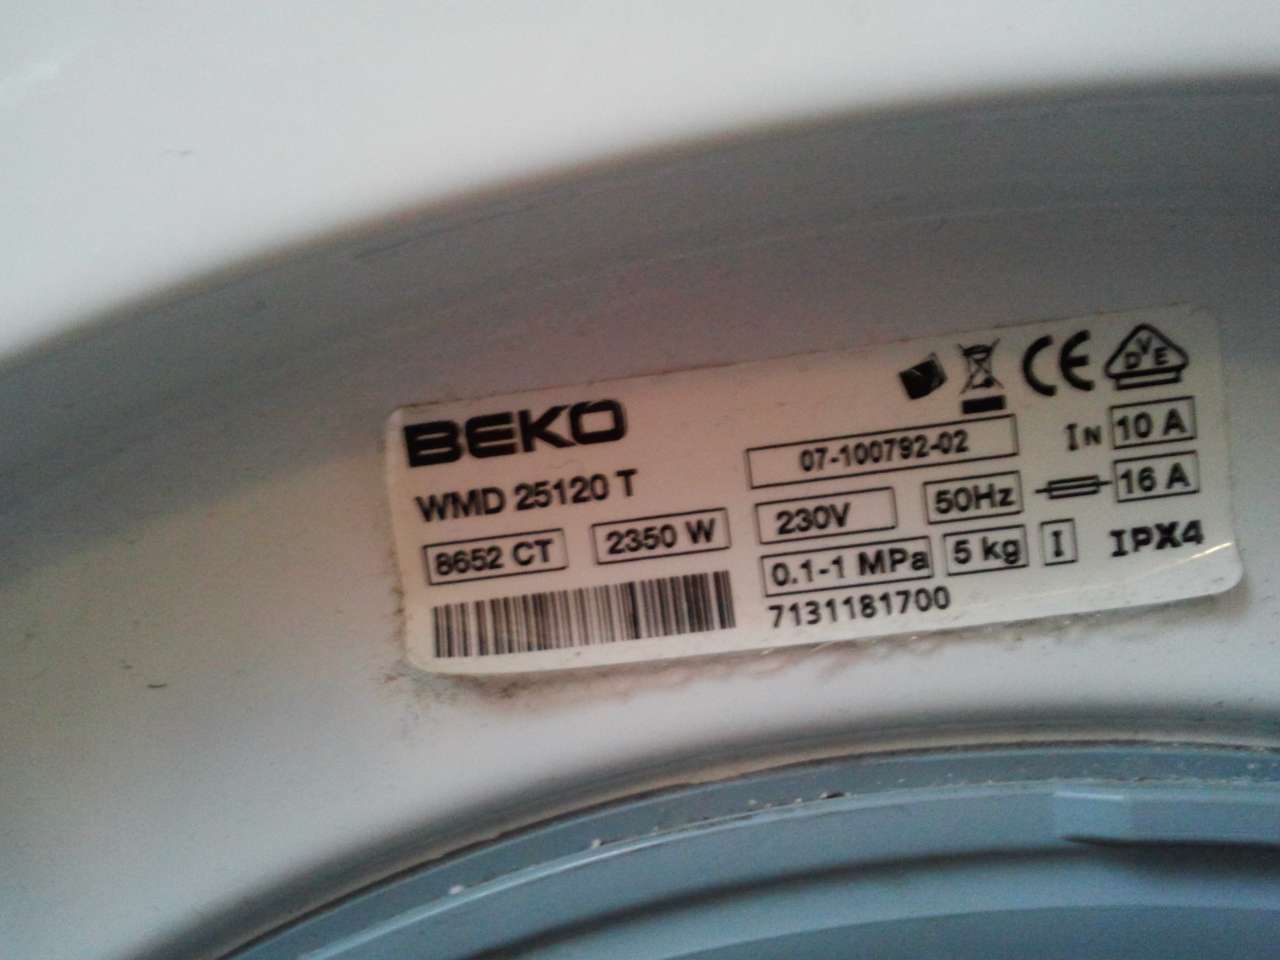 Beko WMD 25120 T 8652 CT 07-100792-02 7131181700 sticker